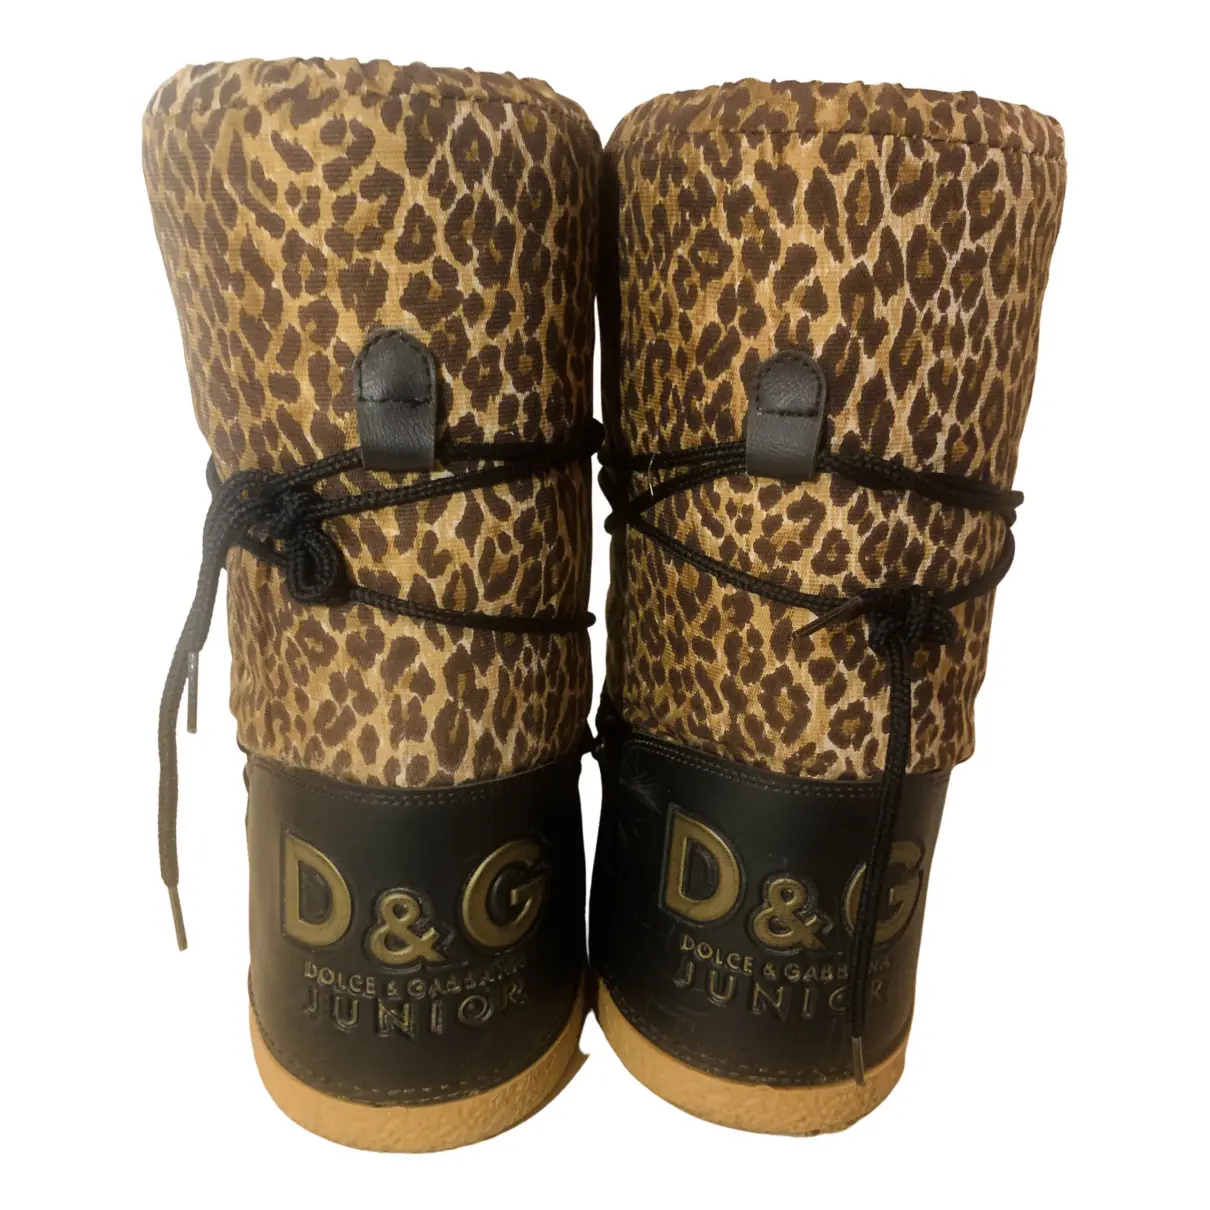 Buy D&G Boots online